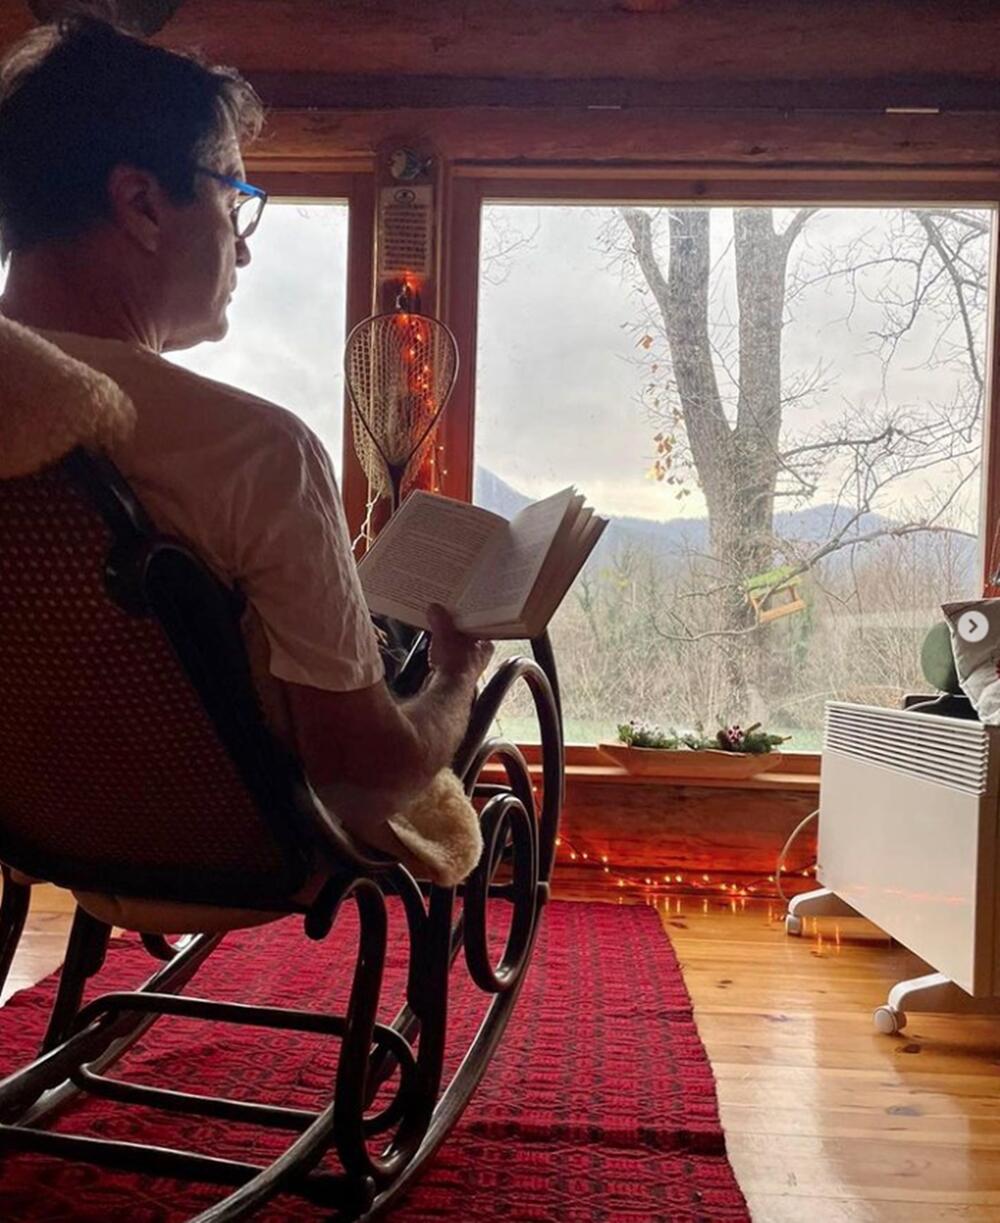 Jovan Memedović čita knjiga u svom domu u prirodi